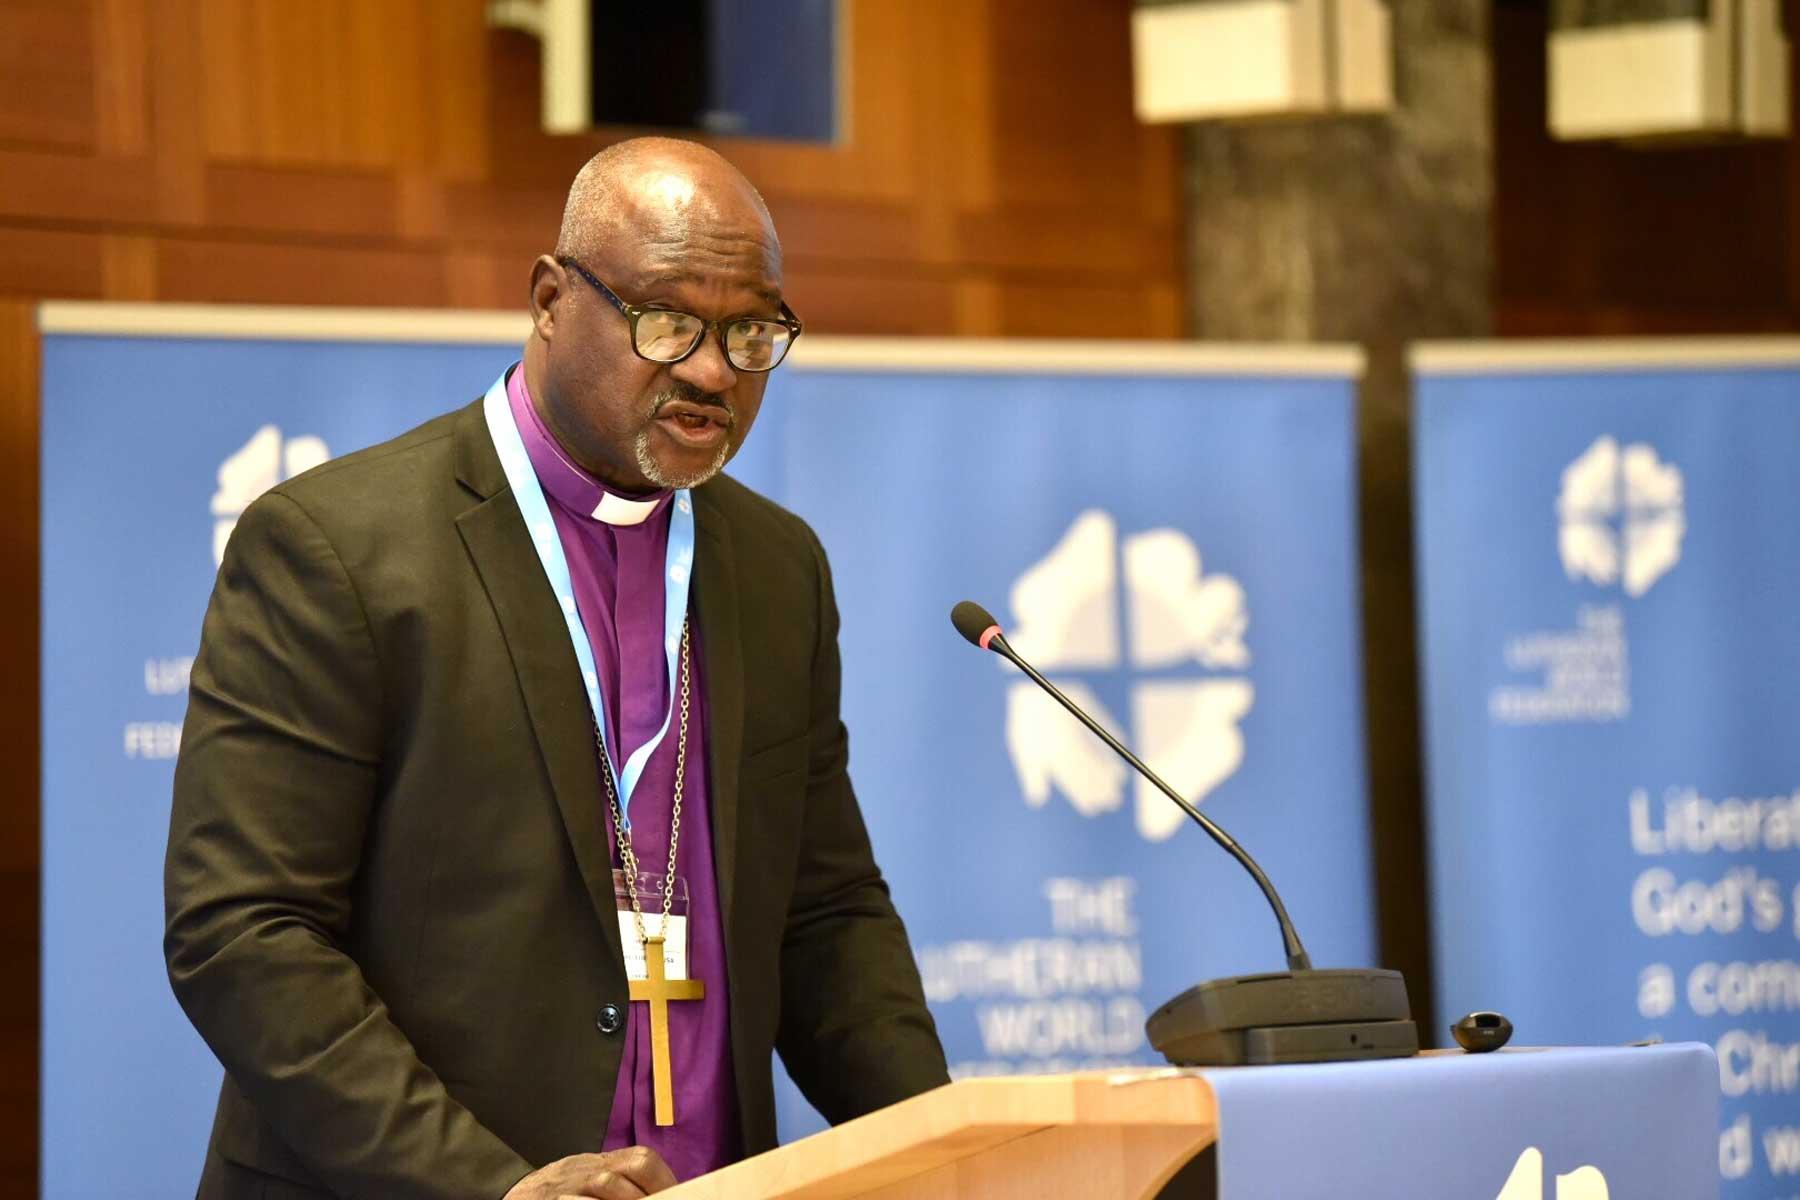 In seiner Ansprache bei der Ratstagung 2018 in Genf bezog sich LWB-Präsident Musa auf die Bedeutung der Zwölften Vollversammlung und des Reformationsjubiläums. Foto: LWB/Albin Hillert